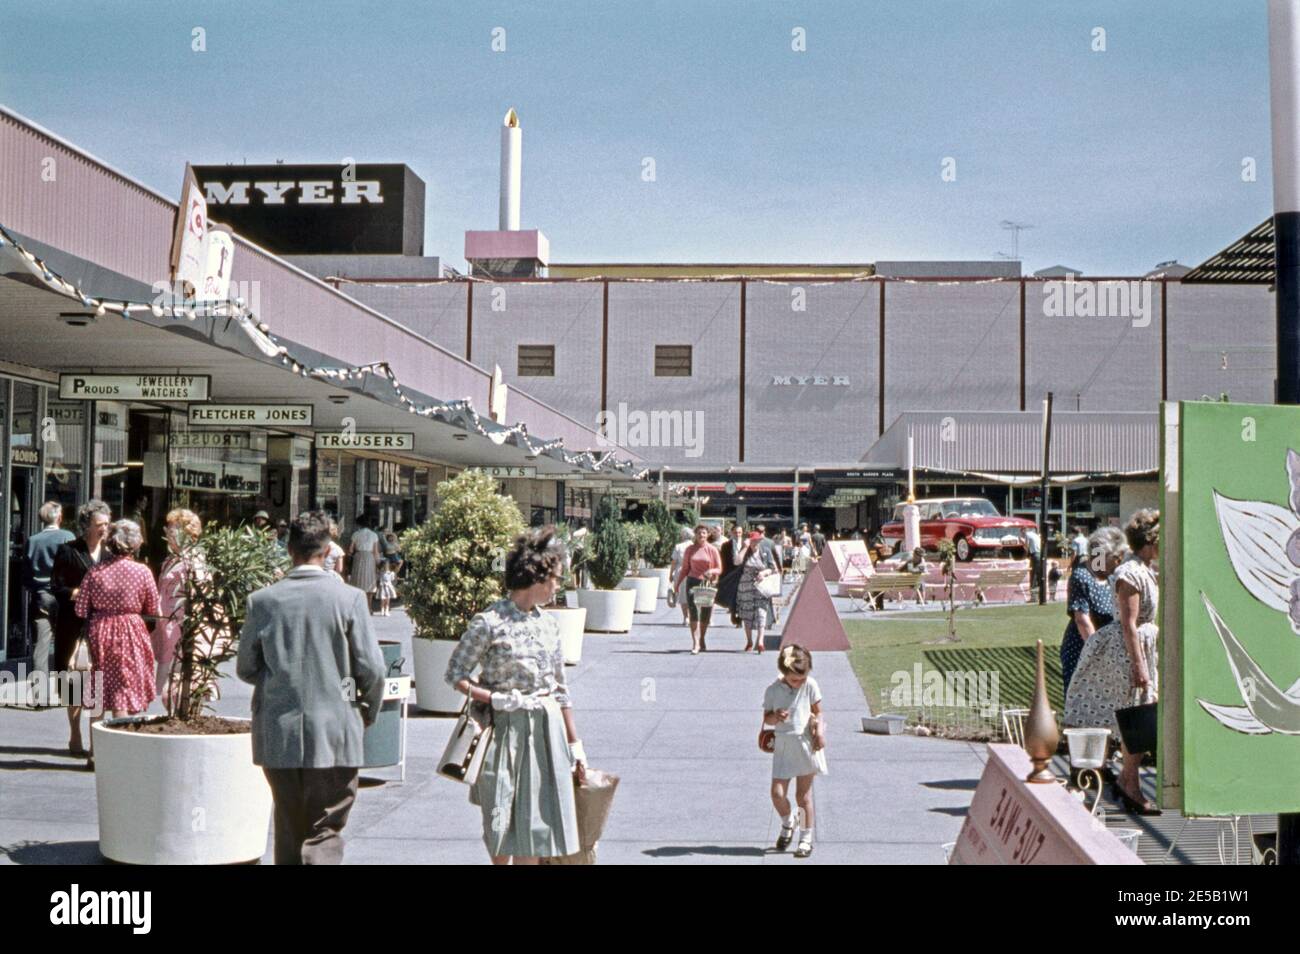 Ein australisches Einkaufszentrum im Jahr 1961. Chadstone Shopping Centre (‘Chaddy’) ist ein großes regionales Einkaufszentrum im südöstlichen Vorort Malvern East, Melbourne, Victoria, Australien. Chadstone Shopping Centre ist das größte Einkaufszentrum in Australien und behauptet, das größte in der südlichen Hemisphäre zu sein. Das Zentrum wurde 1960 eröffnet und war das erste eigenständige regionale Einkaufszentrum in Melbourne. Es umfasst Ankerläden wie die Kaufhäuser Myer und David Jones. Stockfoto